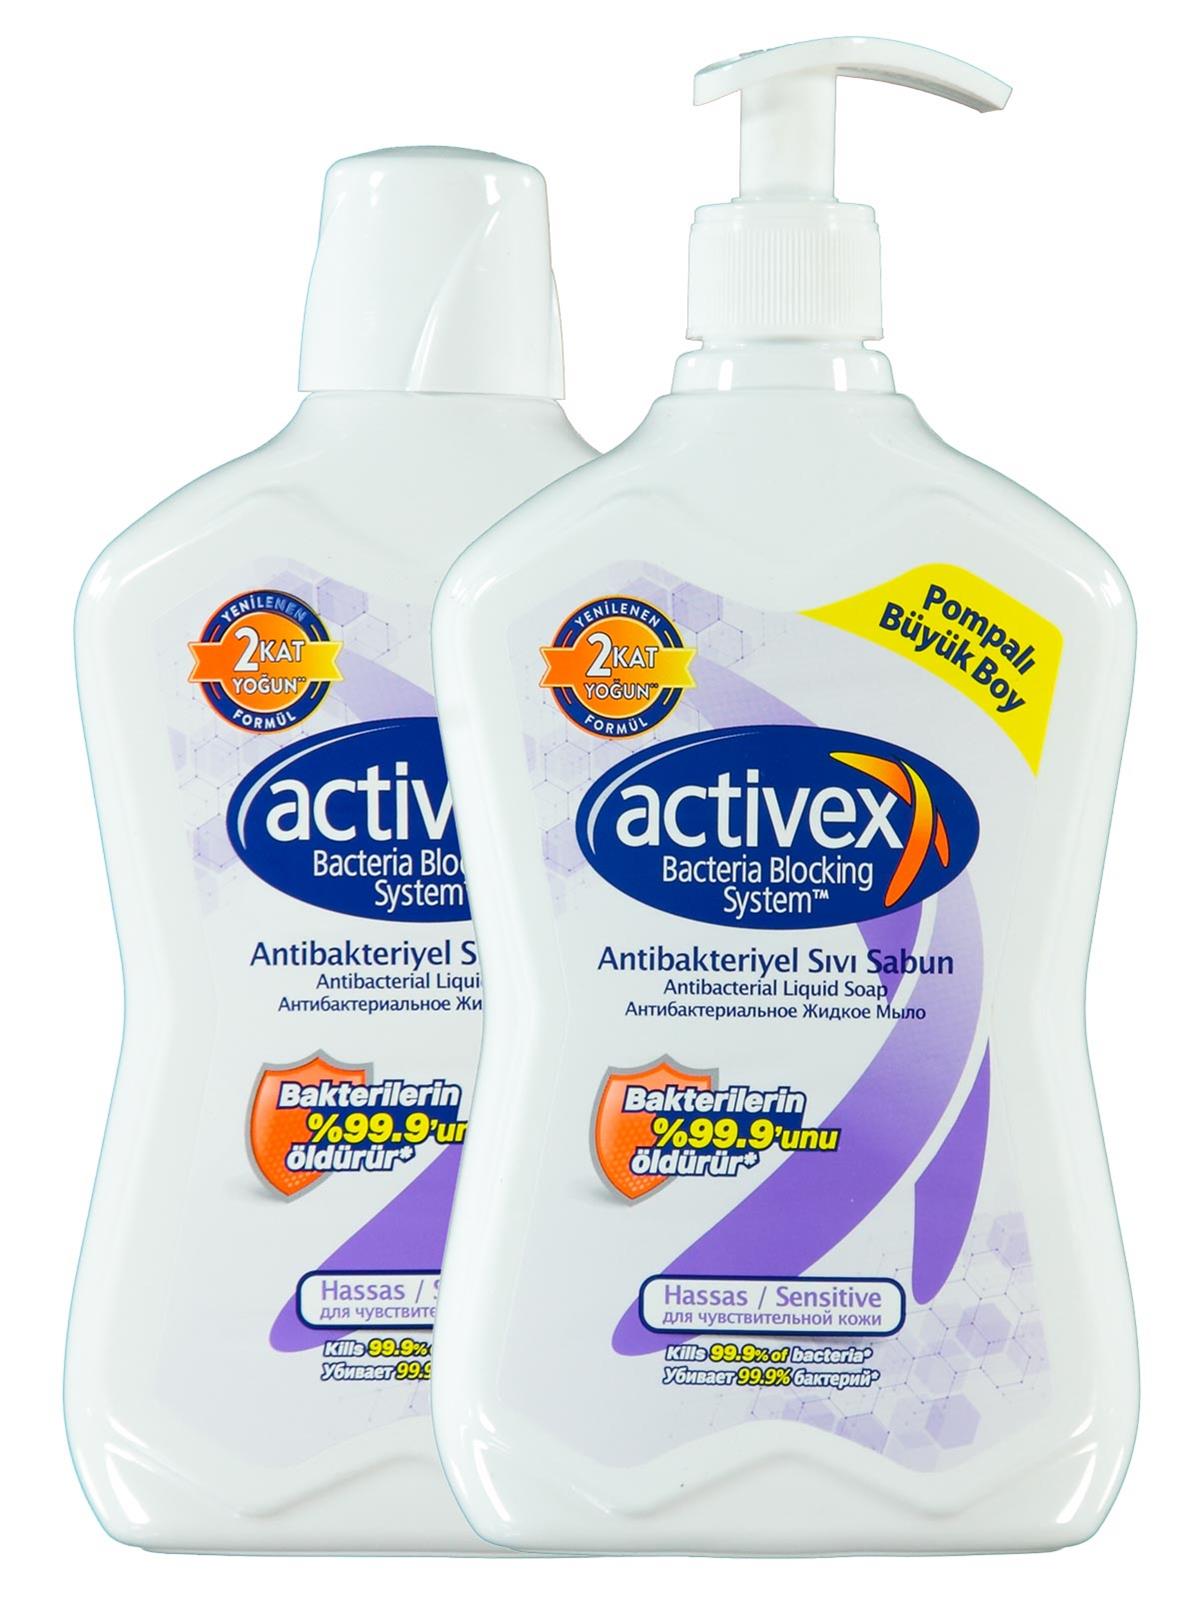 Actıvex Aktif 700 ml Antibakteriyel Sıvı Sabun